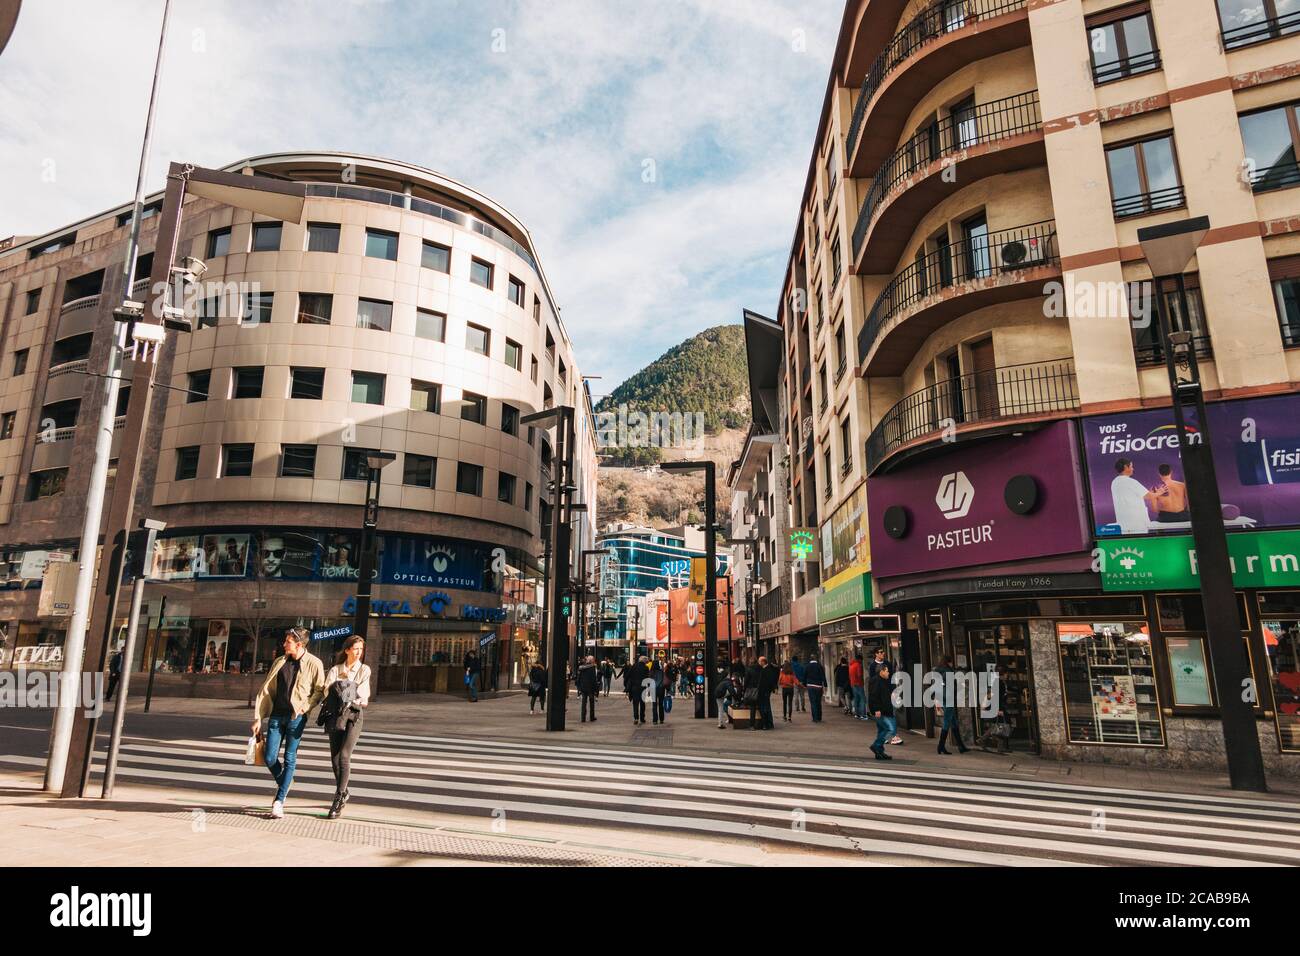 Le principal quartier commerçant d'Andorre-la-Vieille, Andorre. Populaire comme destination hors taxes pour les résidents en France et en Espagne Banque D'Images